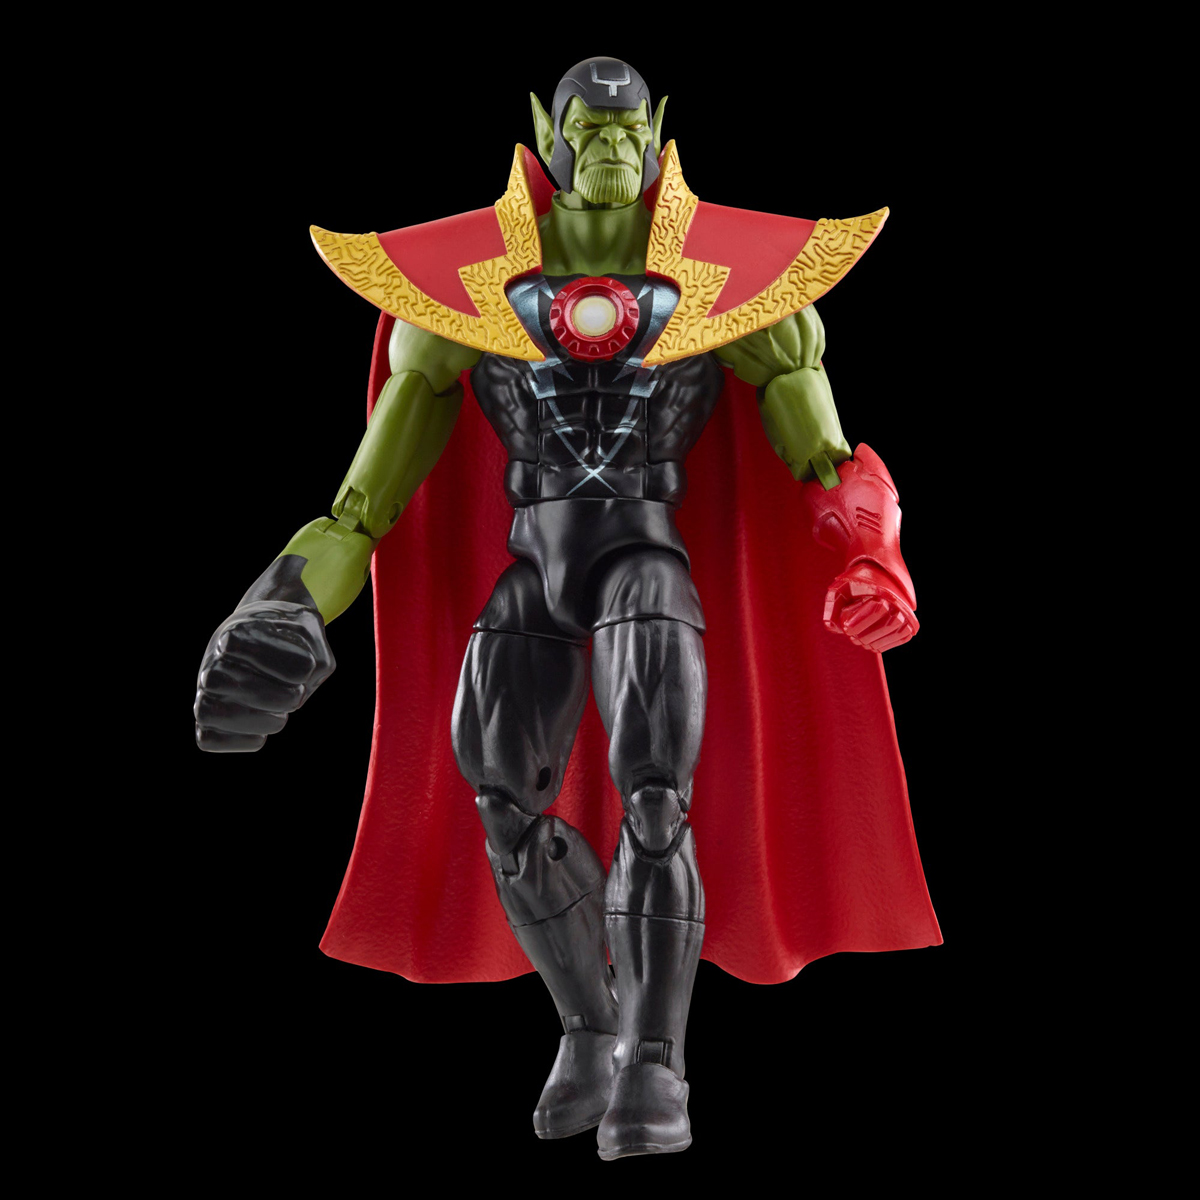 Marvel-Legends-Skrull-Queen-and-Super-Skrull-Action-Figures-16